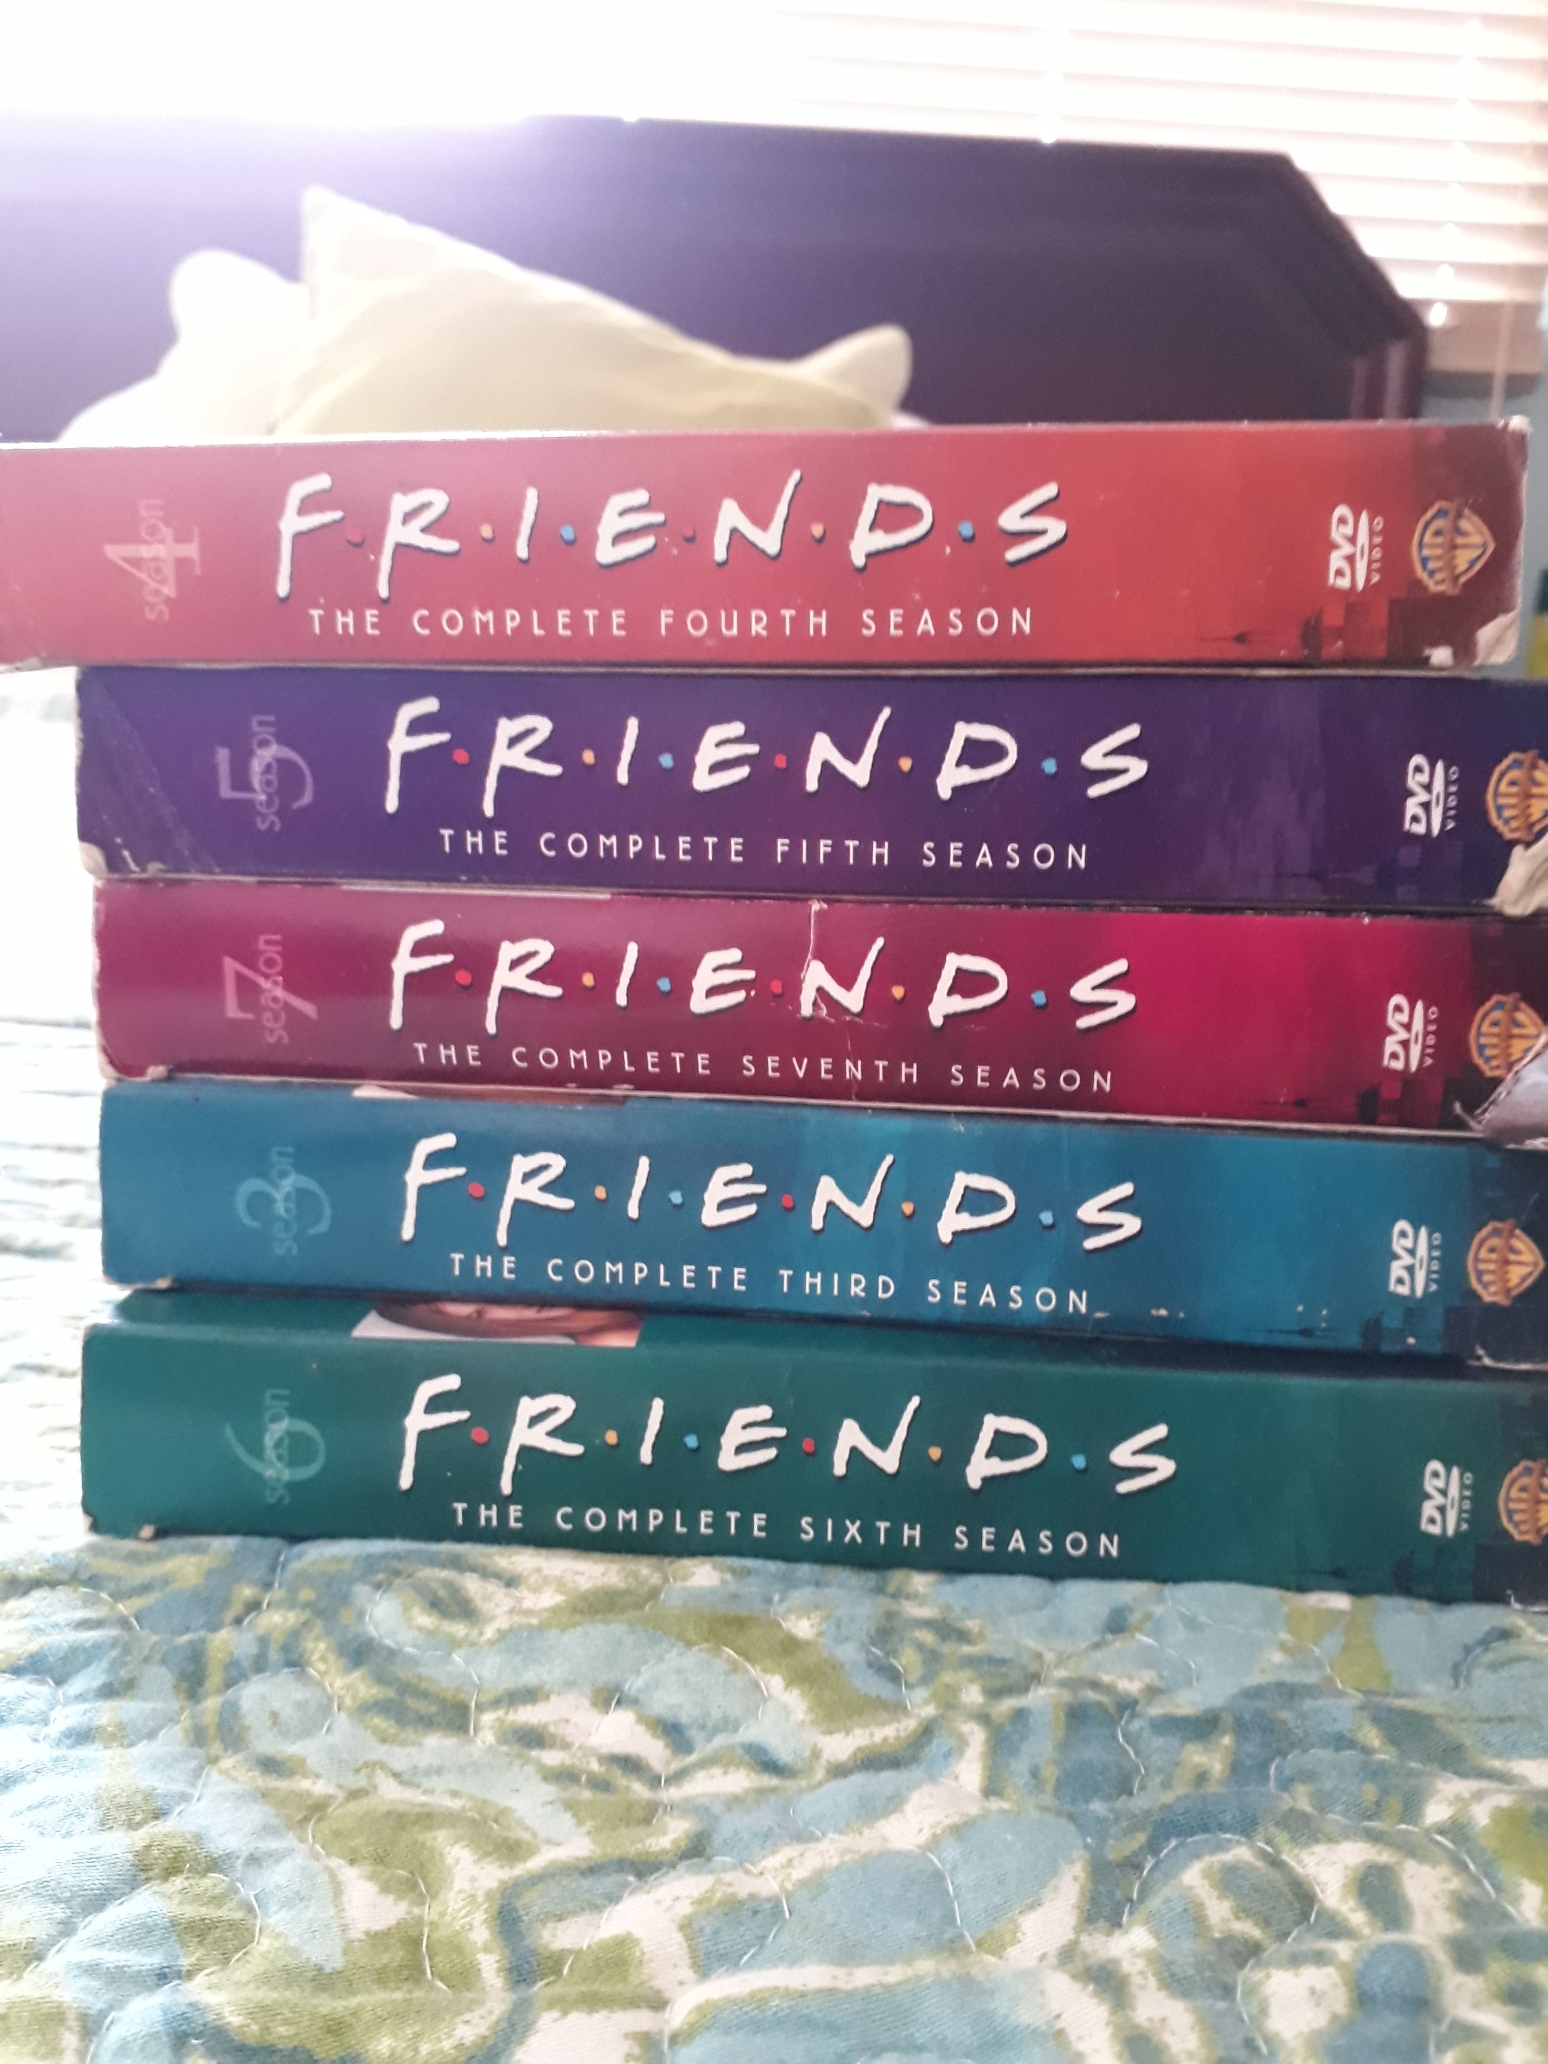 FRIENDS (DVD Complete seasons)